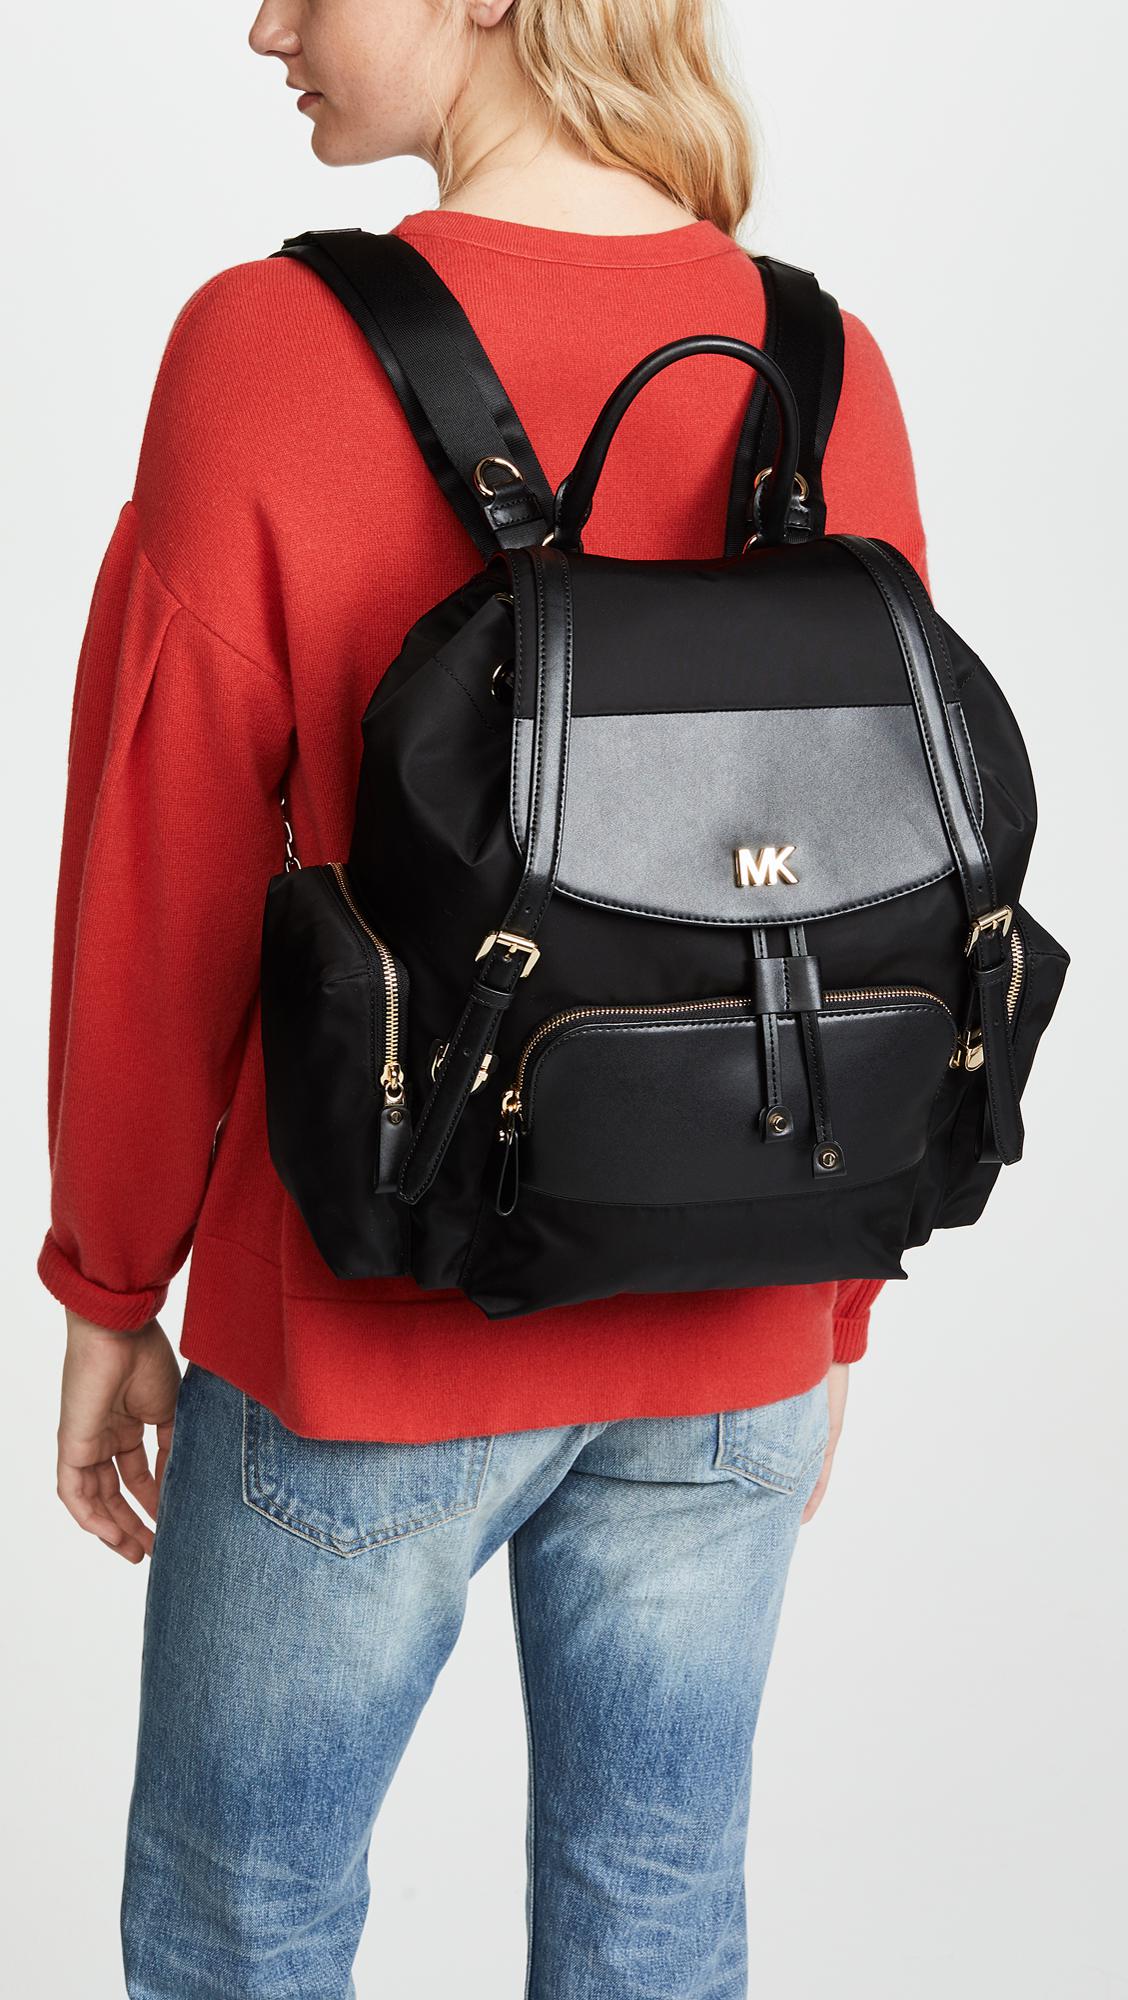 Michael Kors Backpack Diaper Bag | The Art of Mike Mignola